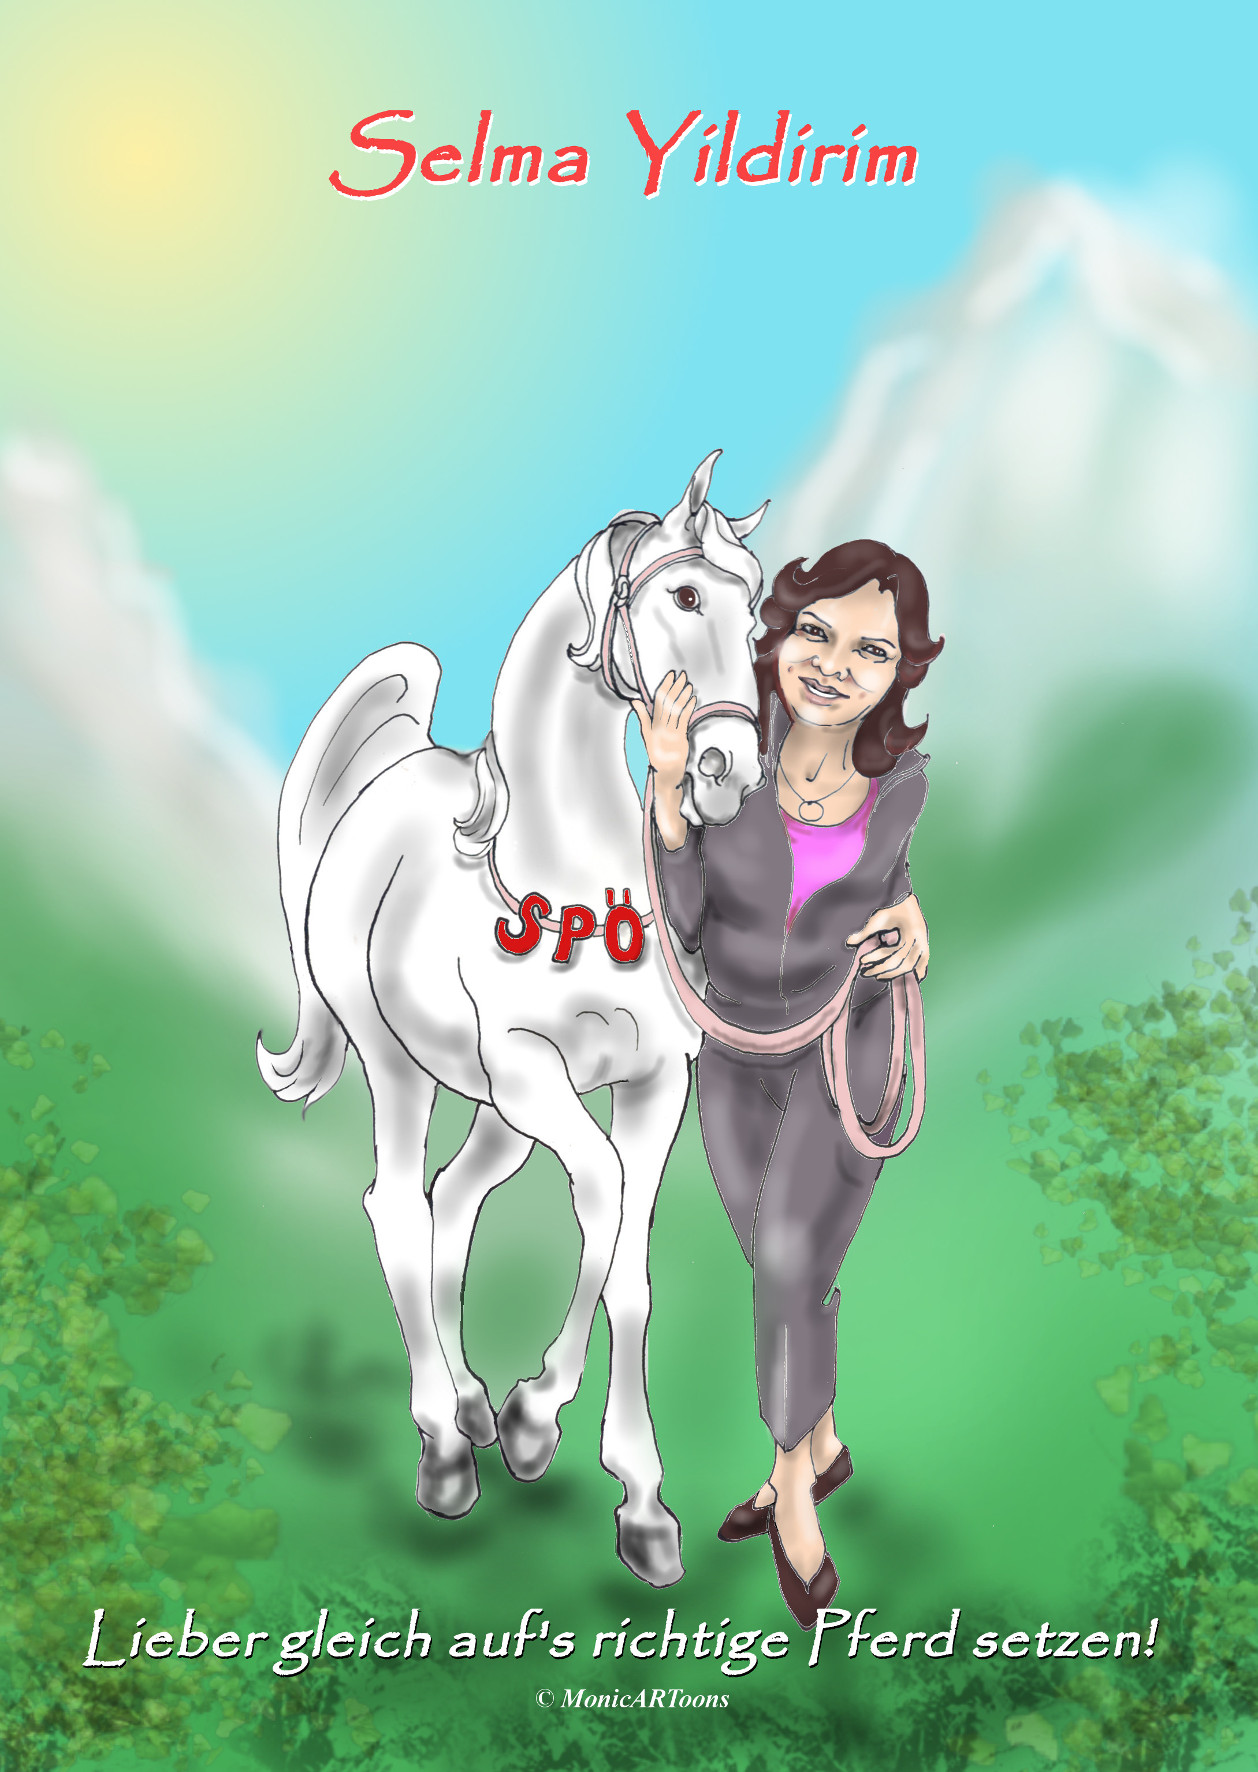 Aufs richtige Pferd setzen - Selma Yildirim